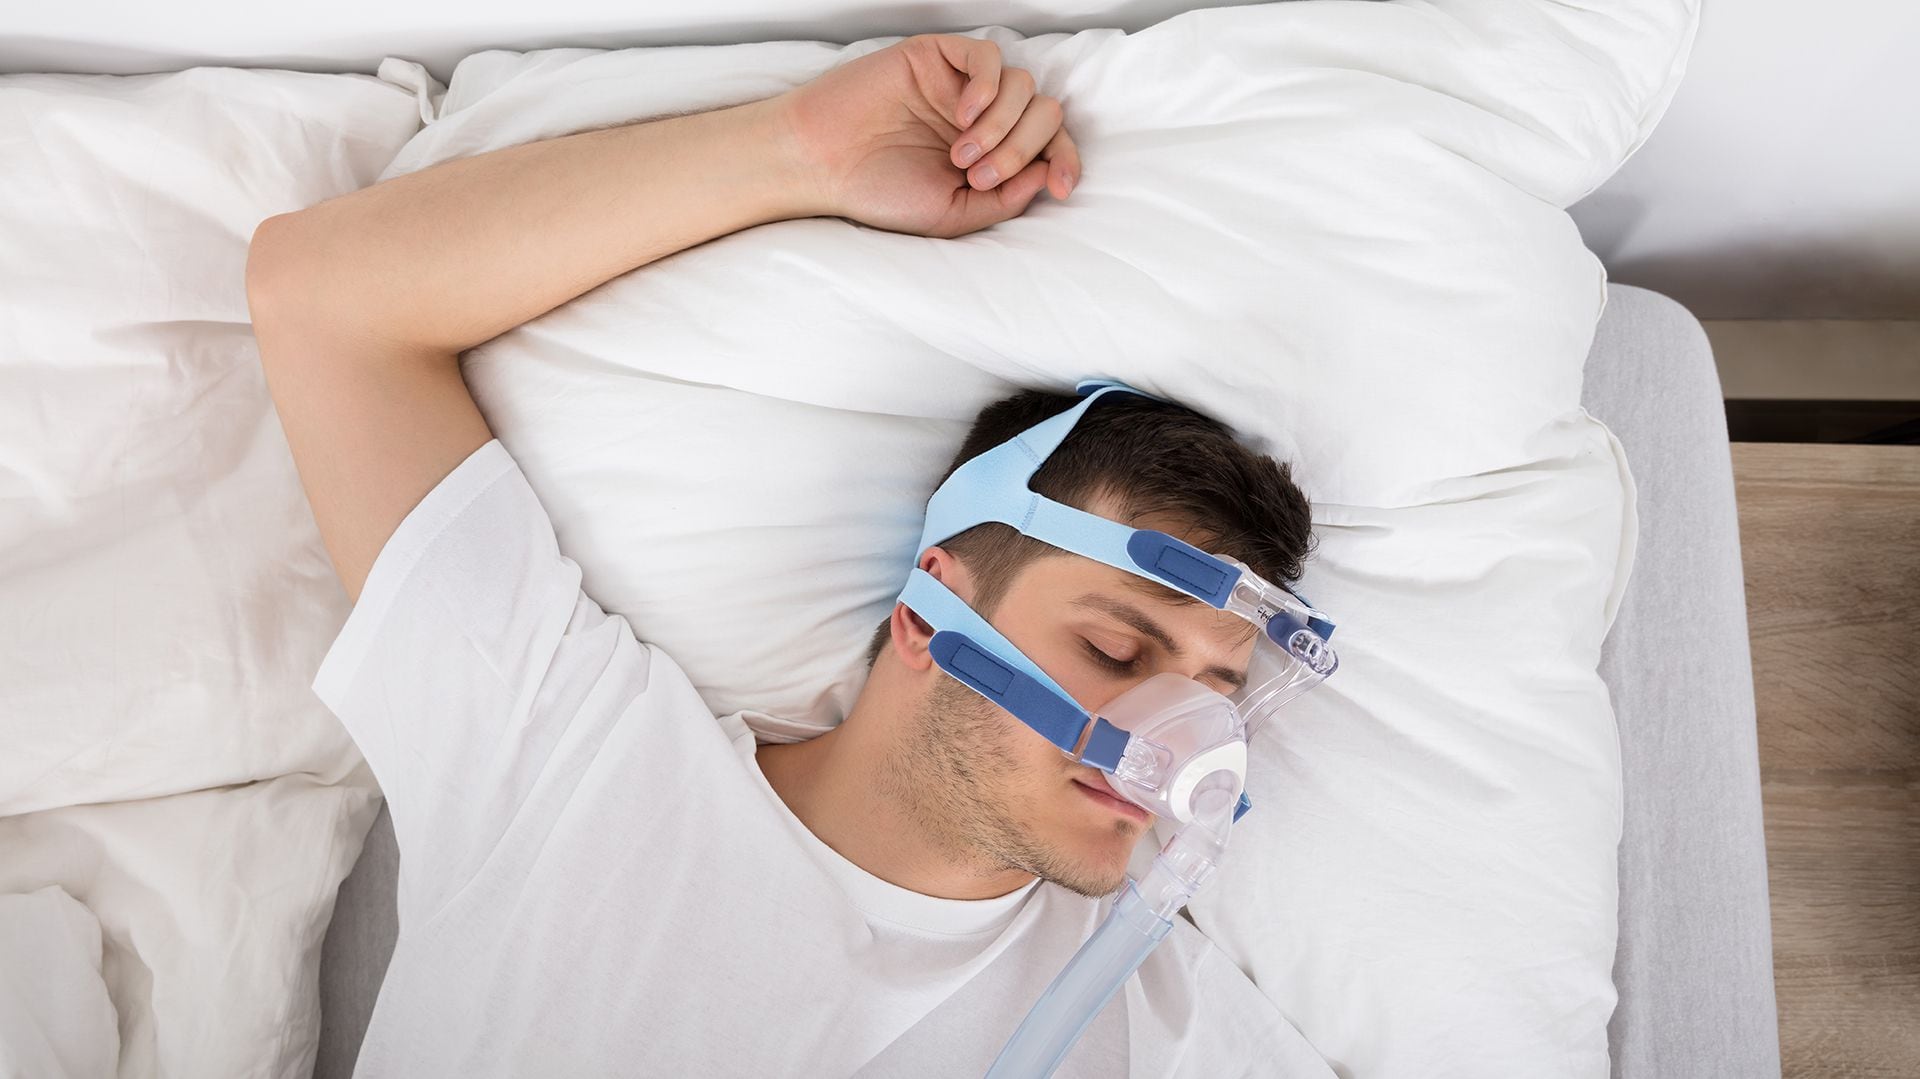 El doctor Jordi de Batlle, coautor de uno de los estudios, destacó los sorprendentes beneficios del tratamiento CPAP en pacientes con apnea del sueño
(Getty)